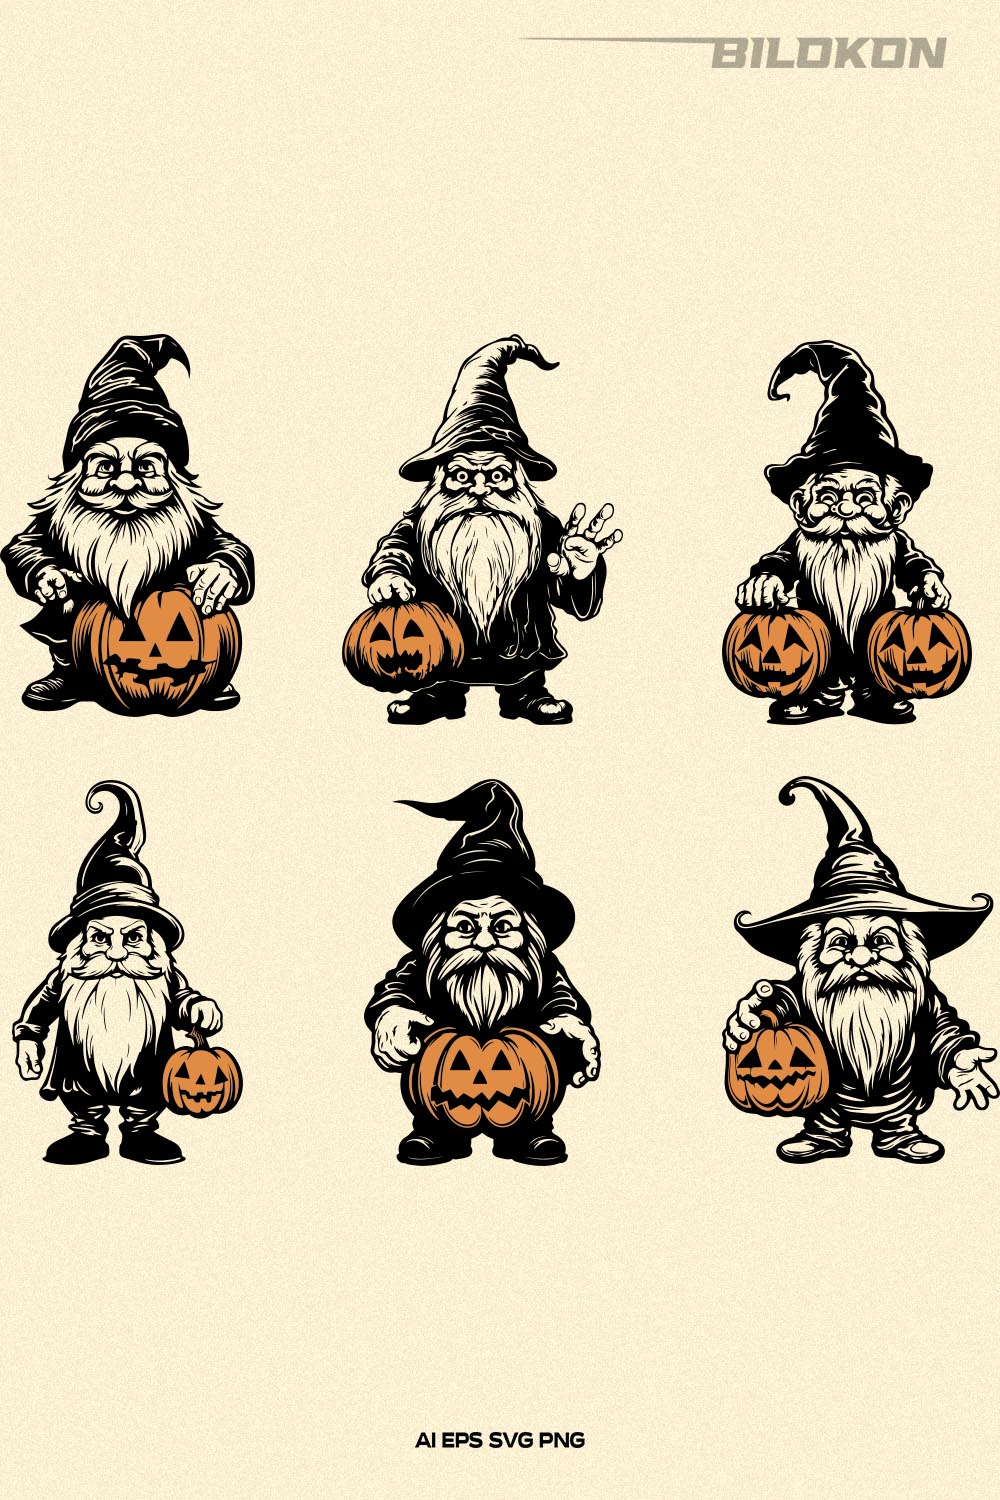 Halloween Gnome Hold Pumpkin, Halloween pumpkin SVG pinterest preview image.